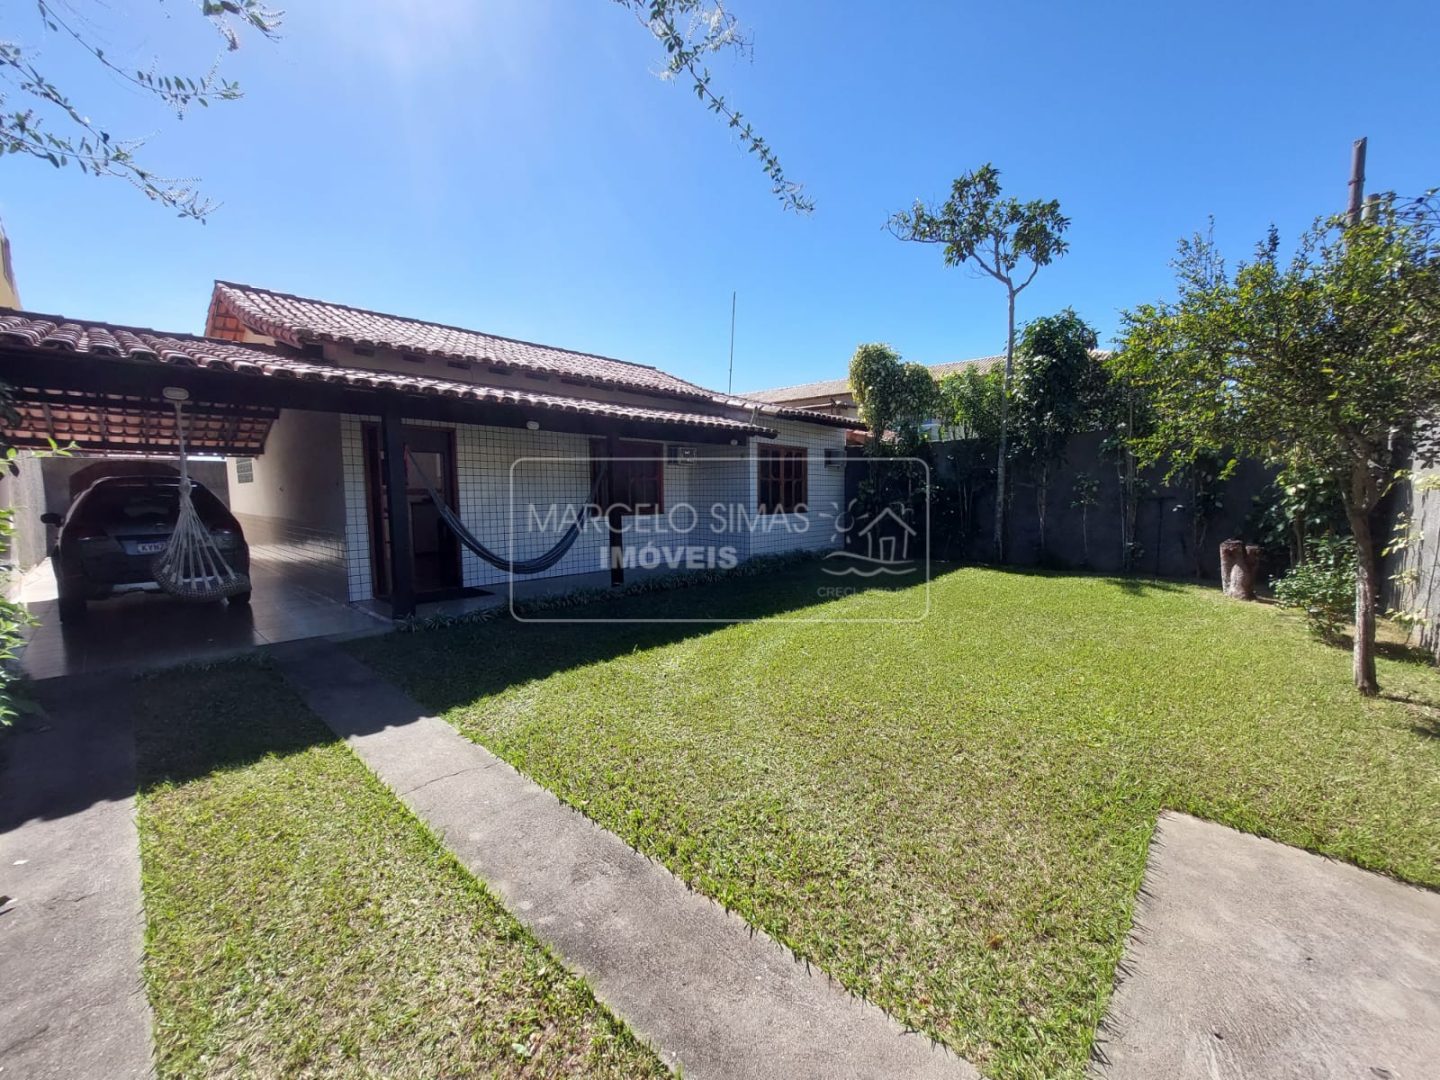 Casa Independente à venda no bairro Canaã Arraial do Cabo.